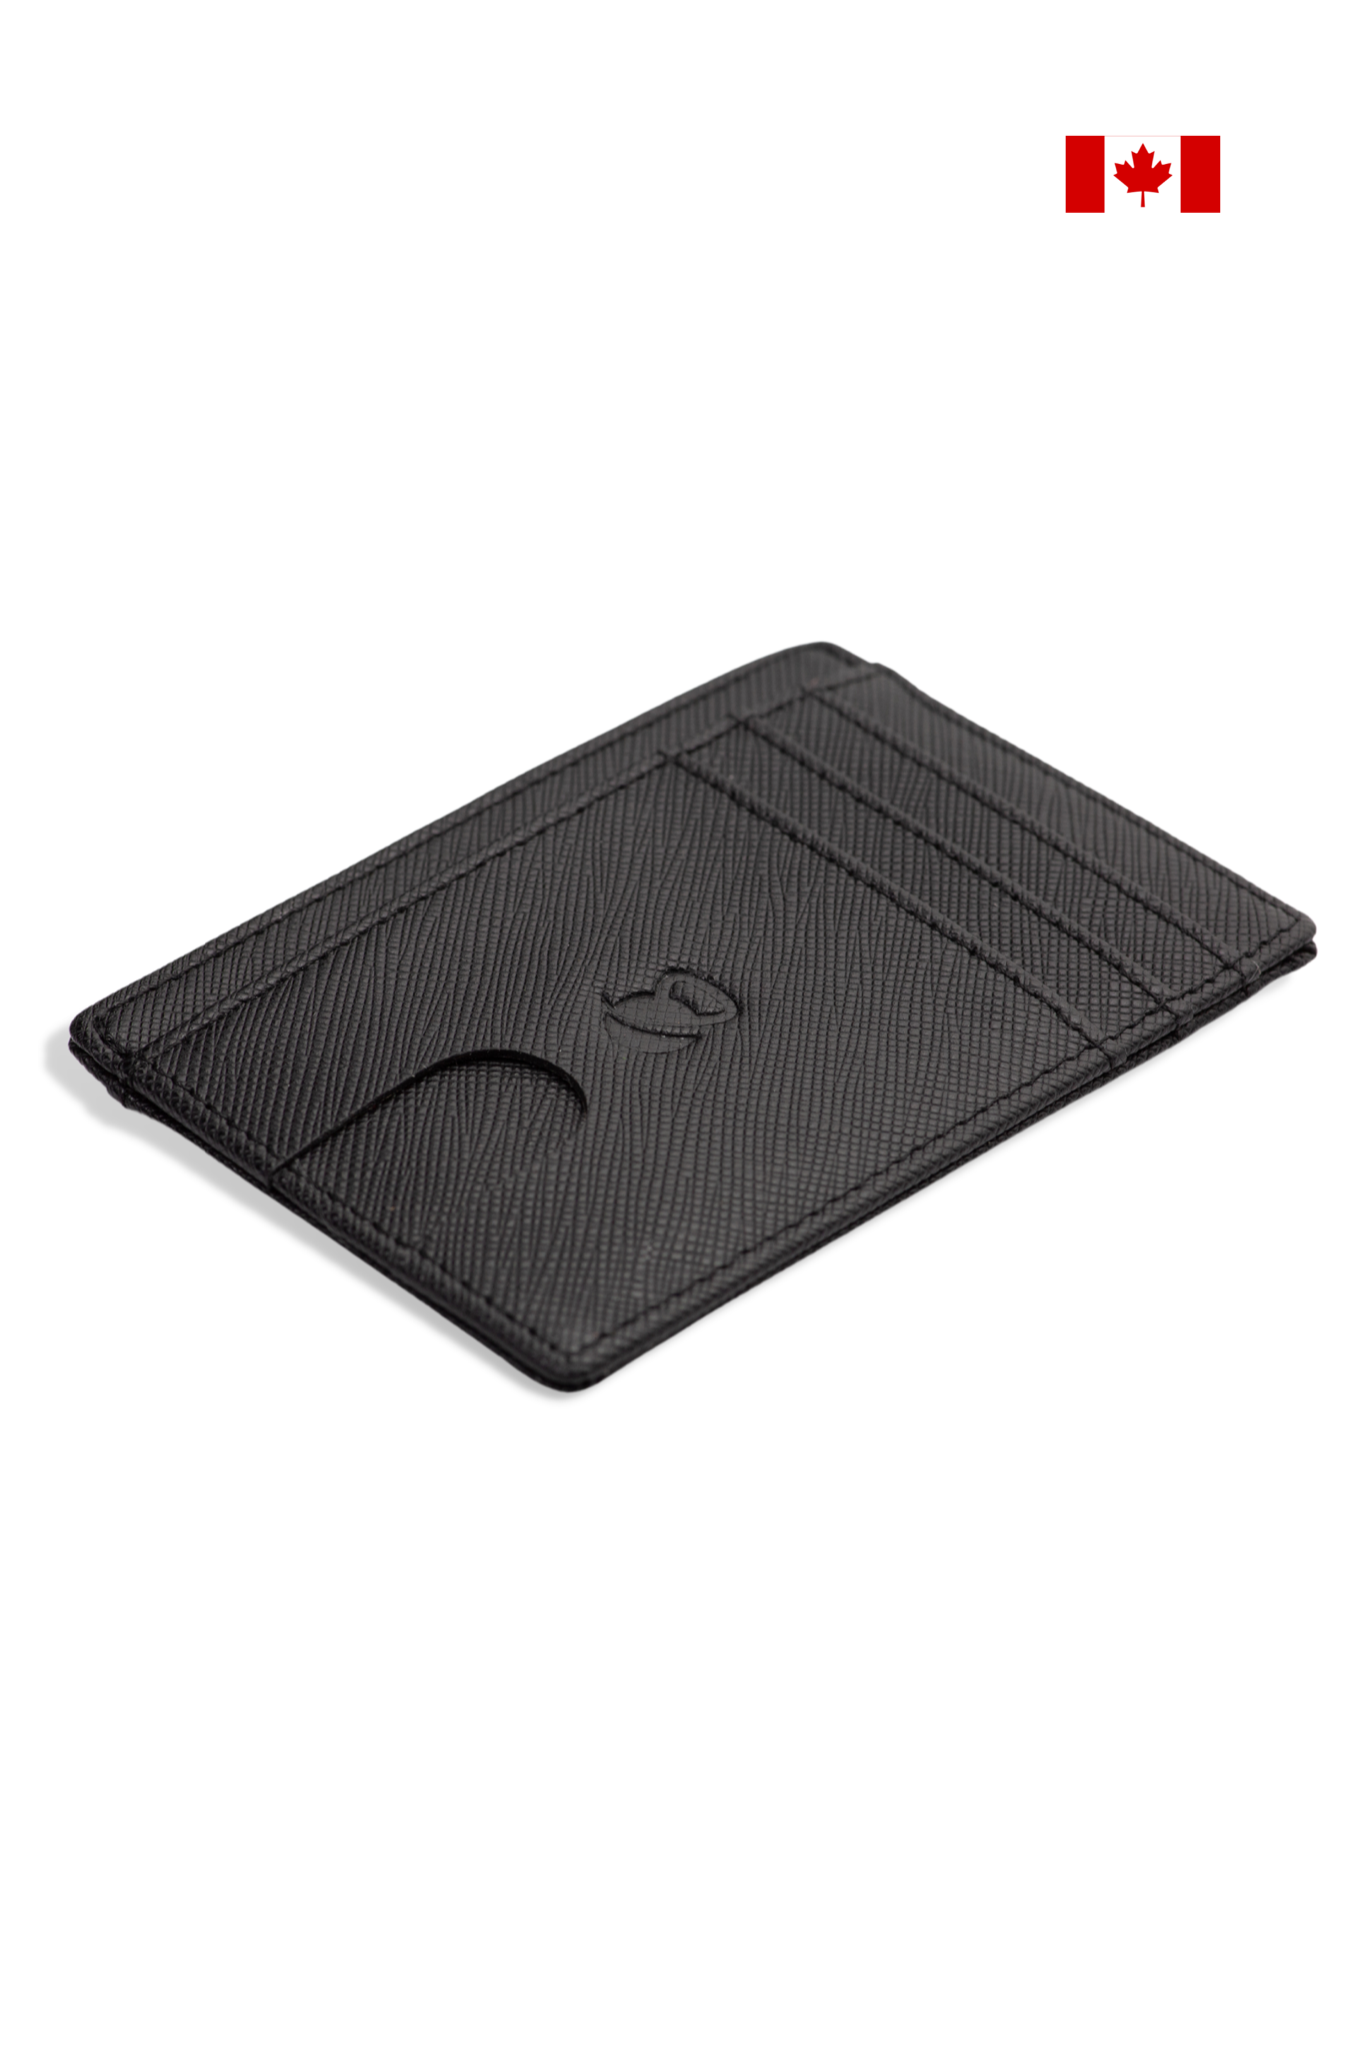 Slim Minimalist Leather Pocket Wallet-Travel